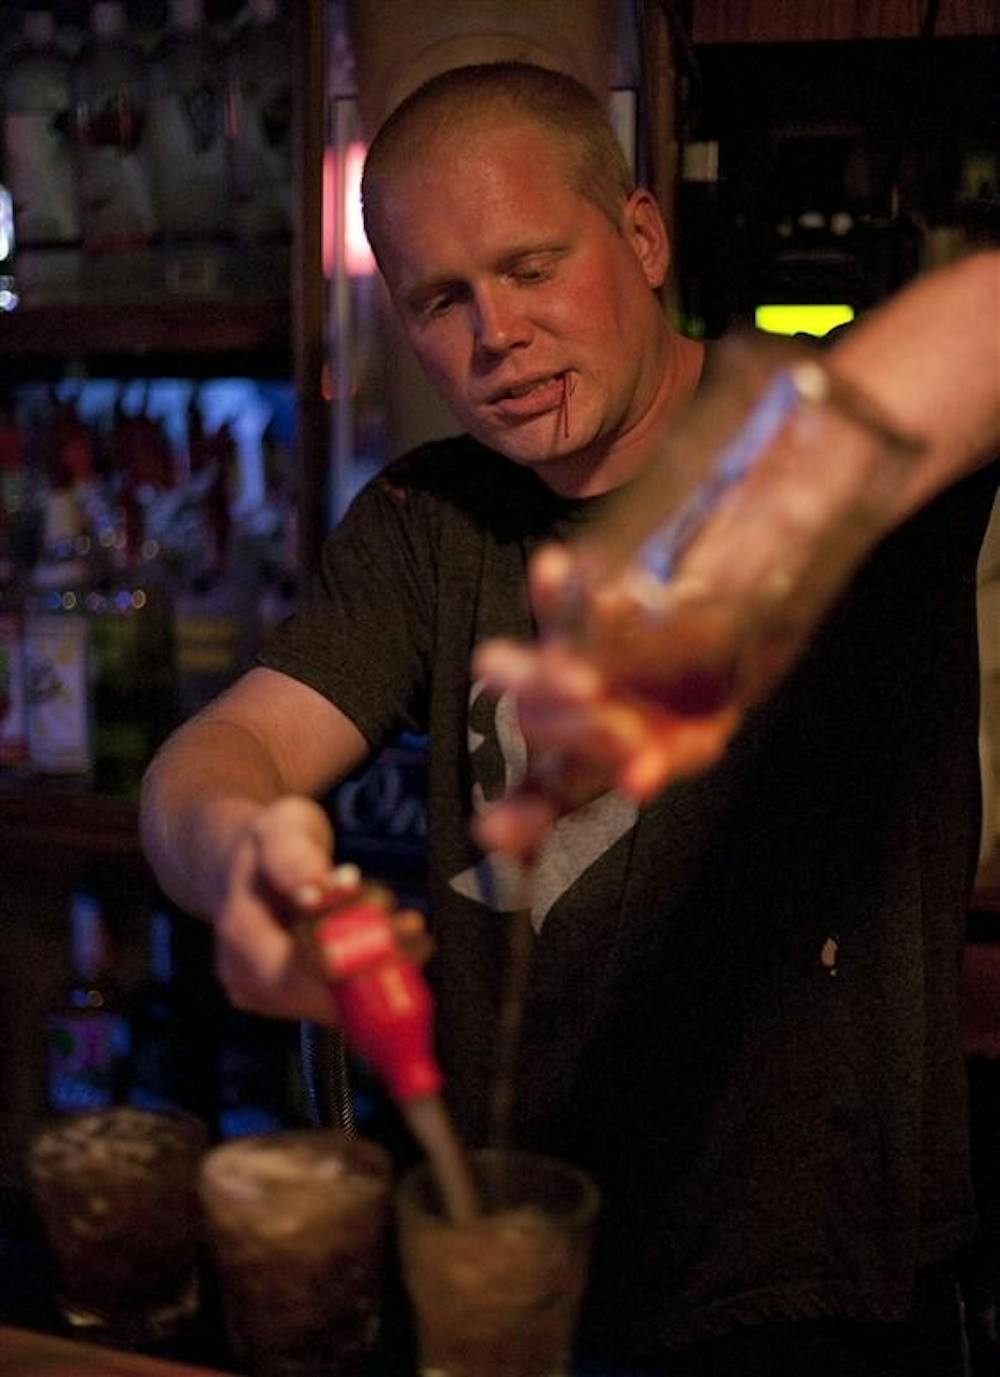 基洛酒吧的调酒师马特·苏特(Matt Suter)和“周末”聊了聊酒吧礼仪。